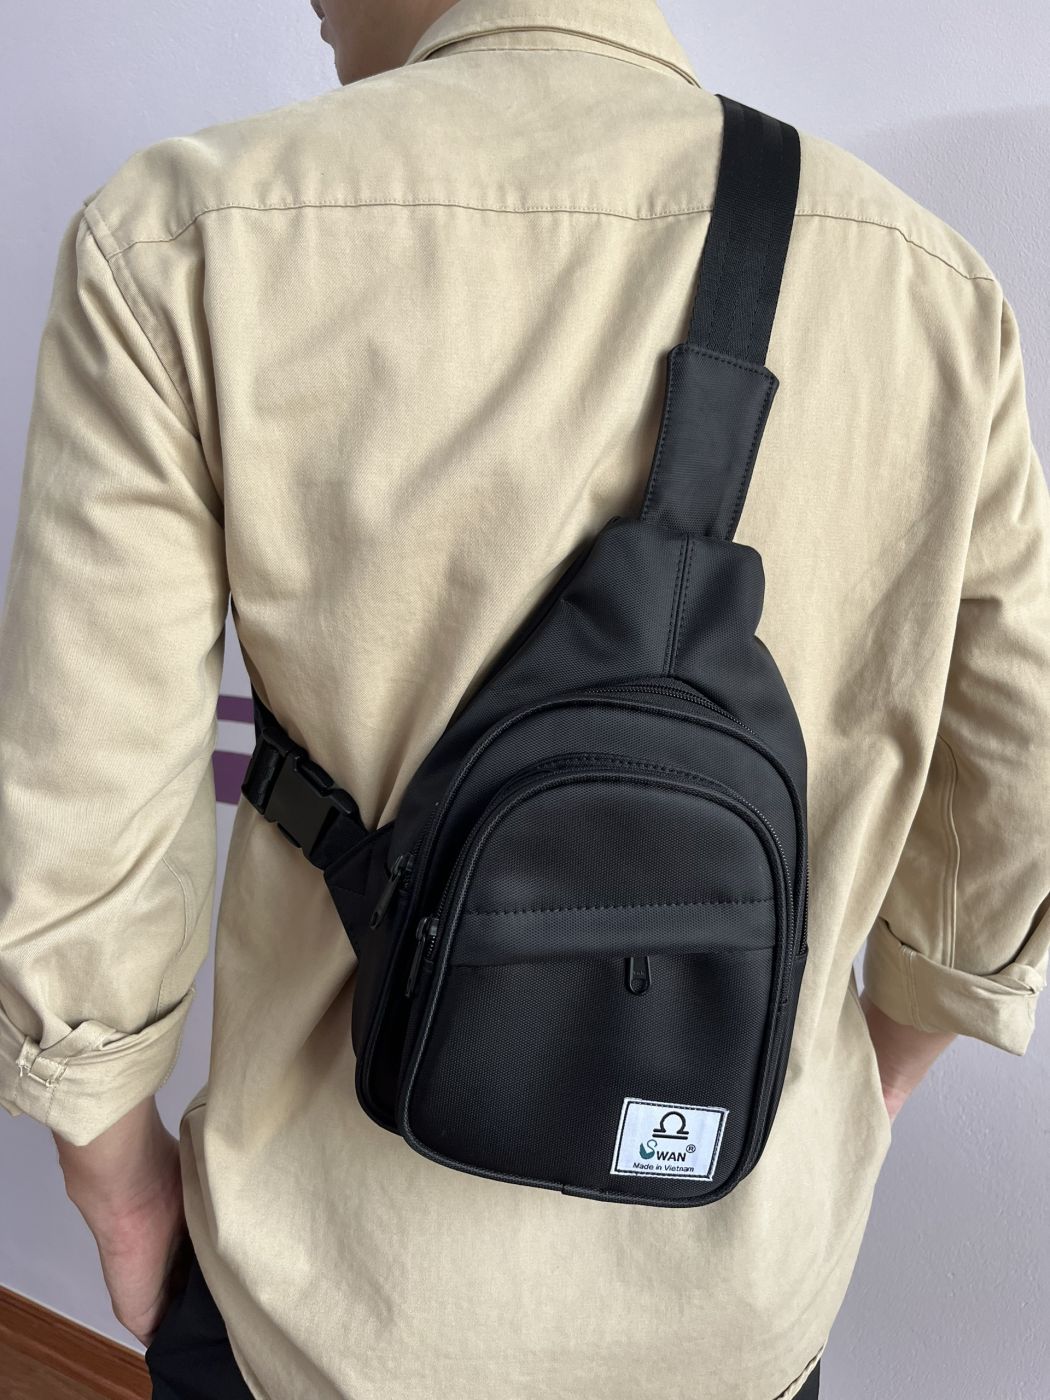 Túi đeo chéo cho nam nữ SWAN chất liệu vải Oxford chống thấm nước cao cấp phù hợp đi học, chơi phố